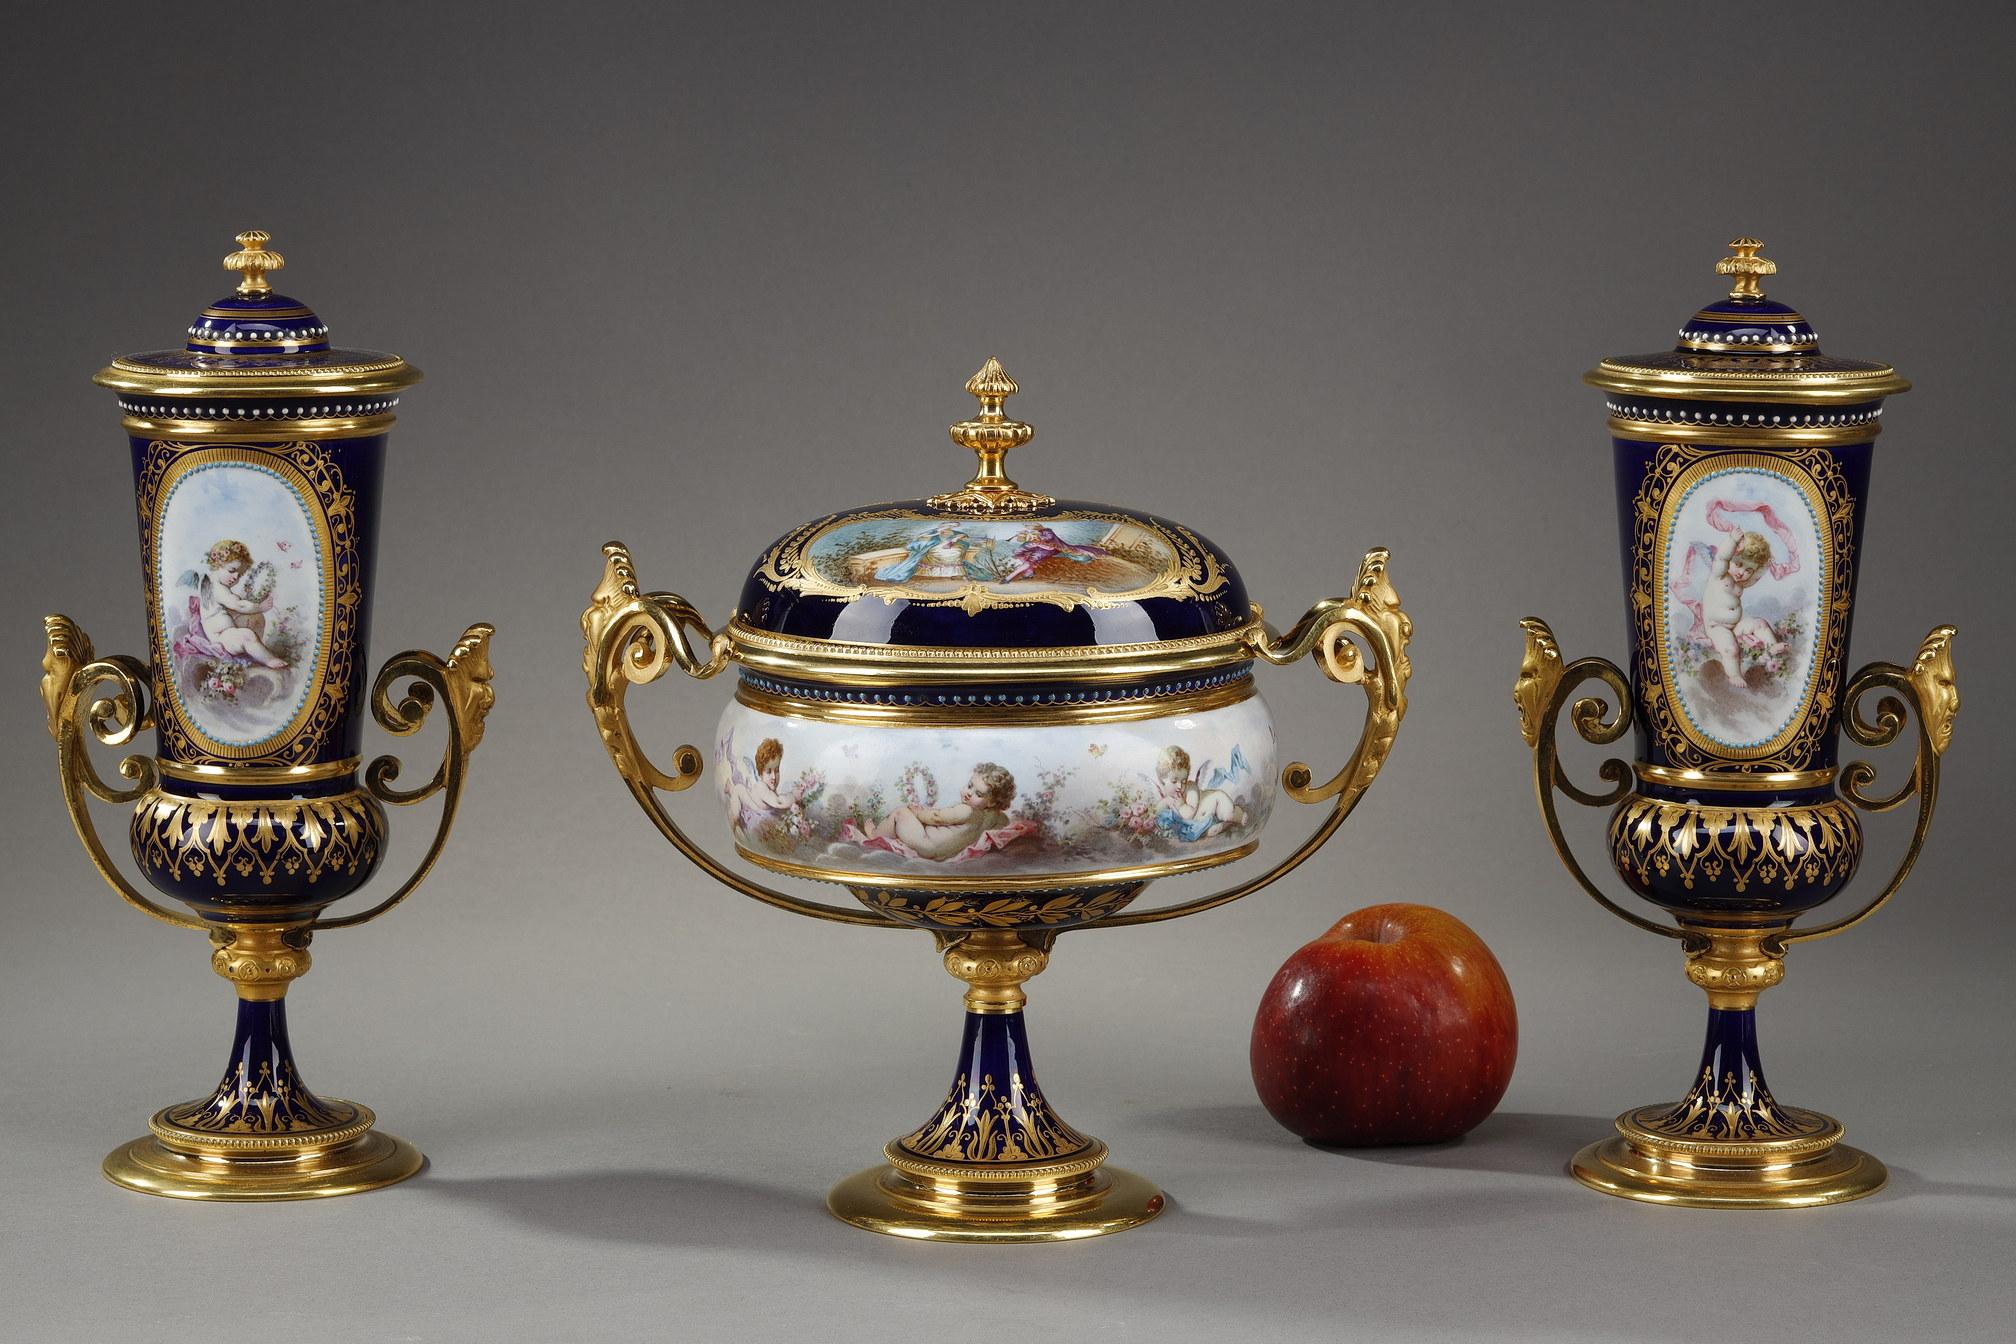 Ensemble aus einem Becher und zwei Vasen aus Sevres-Porzellan mit blauem Hintergrund. Die Elemente sind in vergoldeter und ziselierter Bronze gefasst, deren Griffe mit grotesken Masken und Schriftrollen verziert sind. Der Hintergrund ist mit